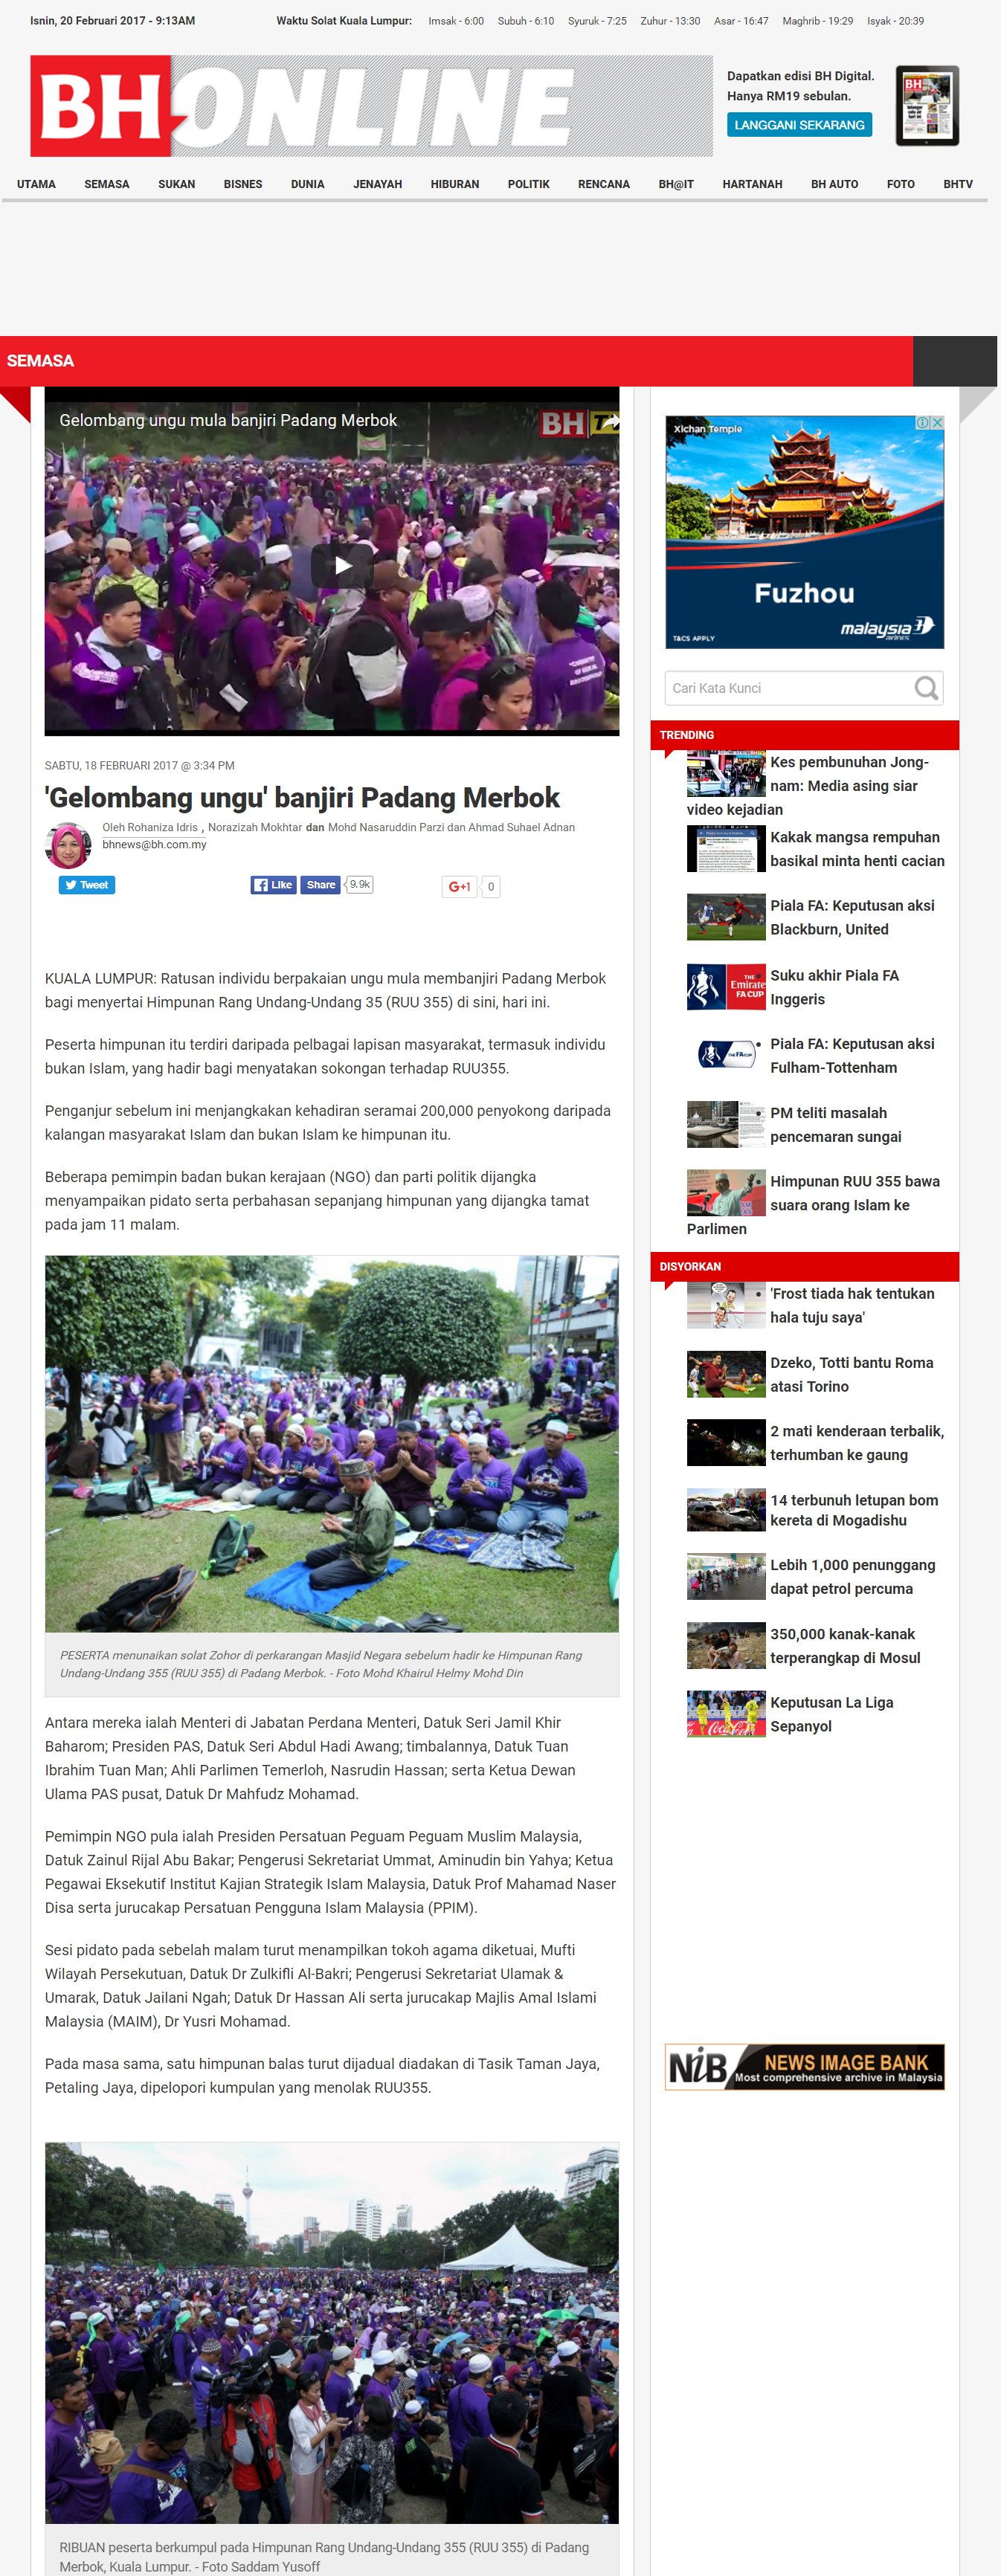 'Gelombang ungu' banjiri Padang Merbok